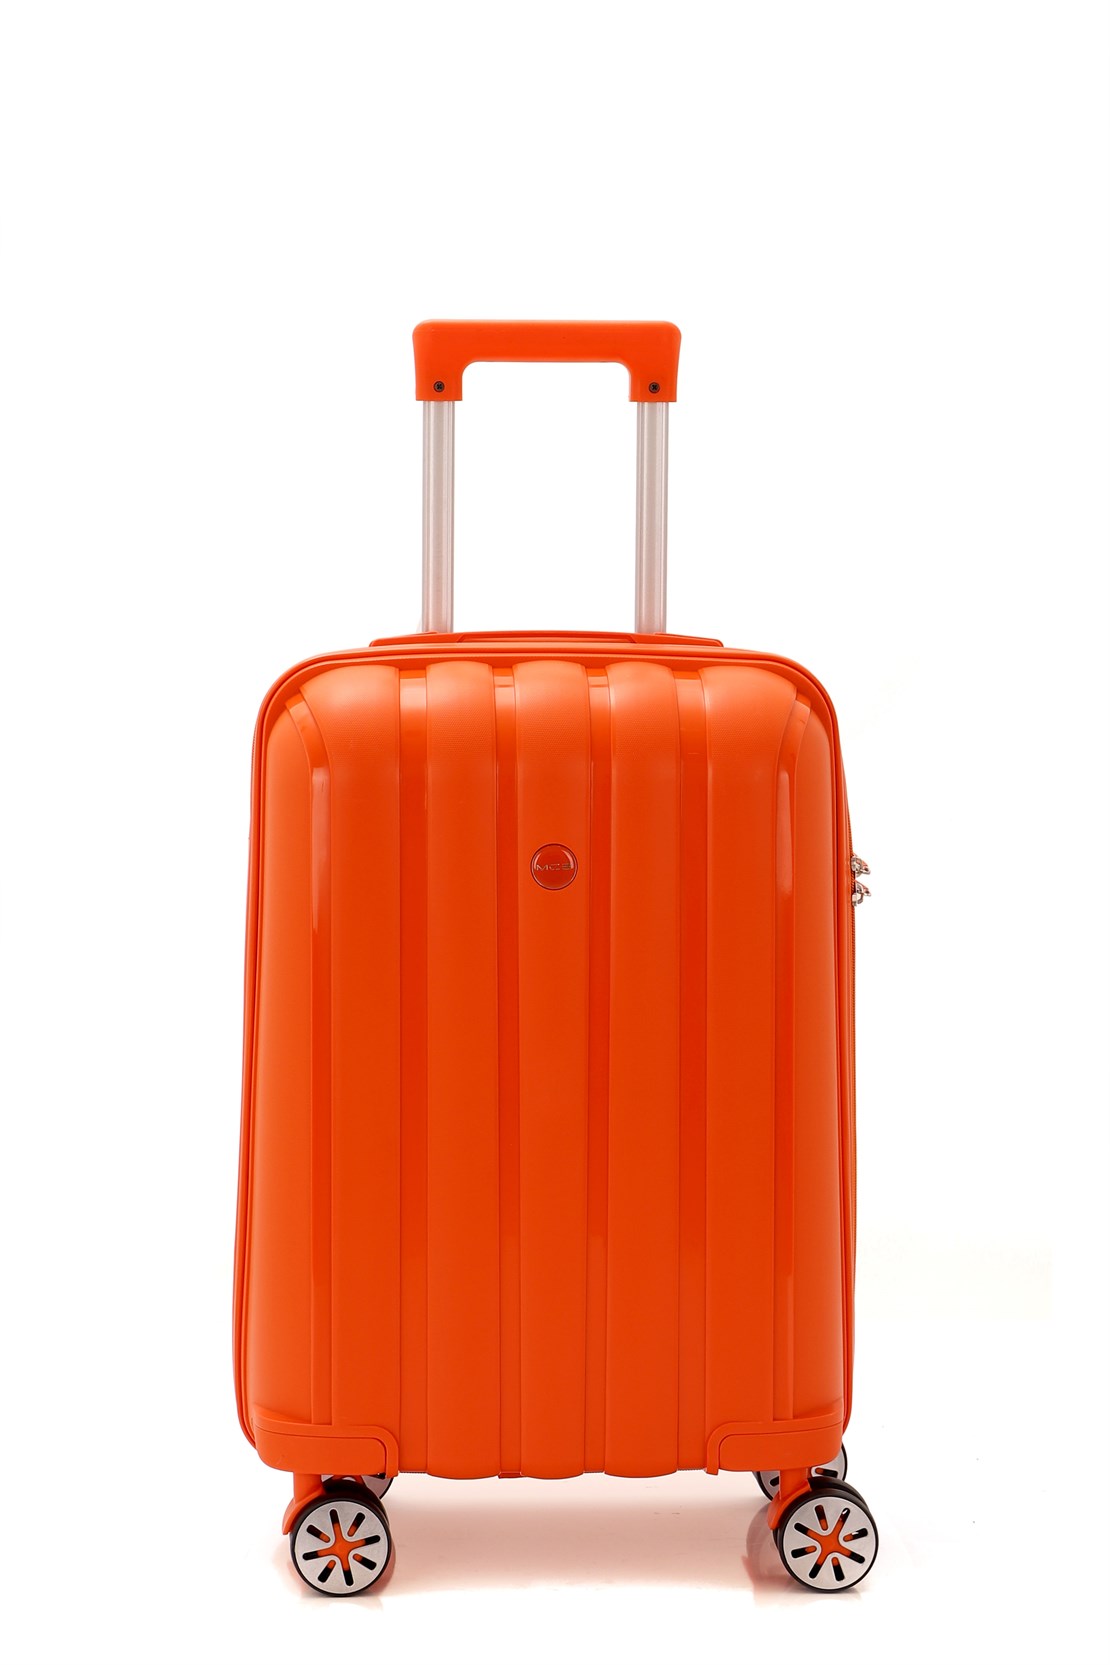 Маленький чемодан для ручьной клади из полипропилена MCS V305 S ORANGE! Для 8-10 кг! - 1